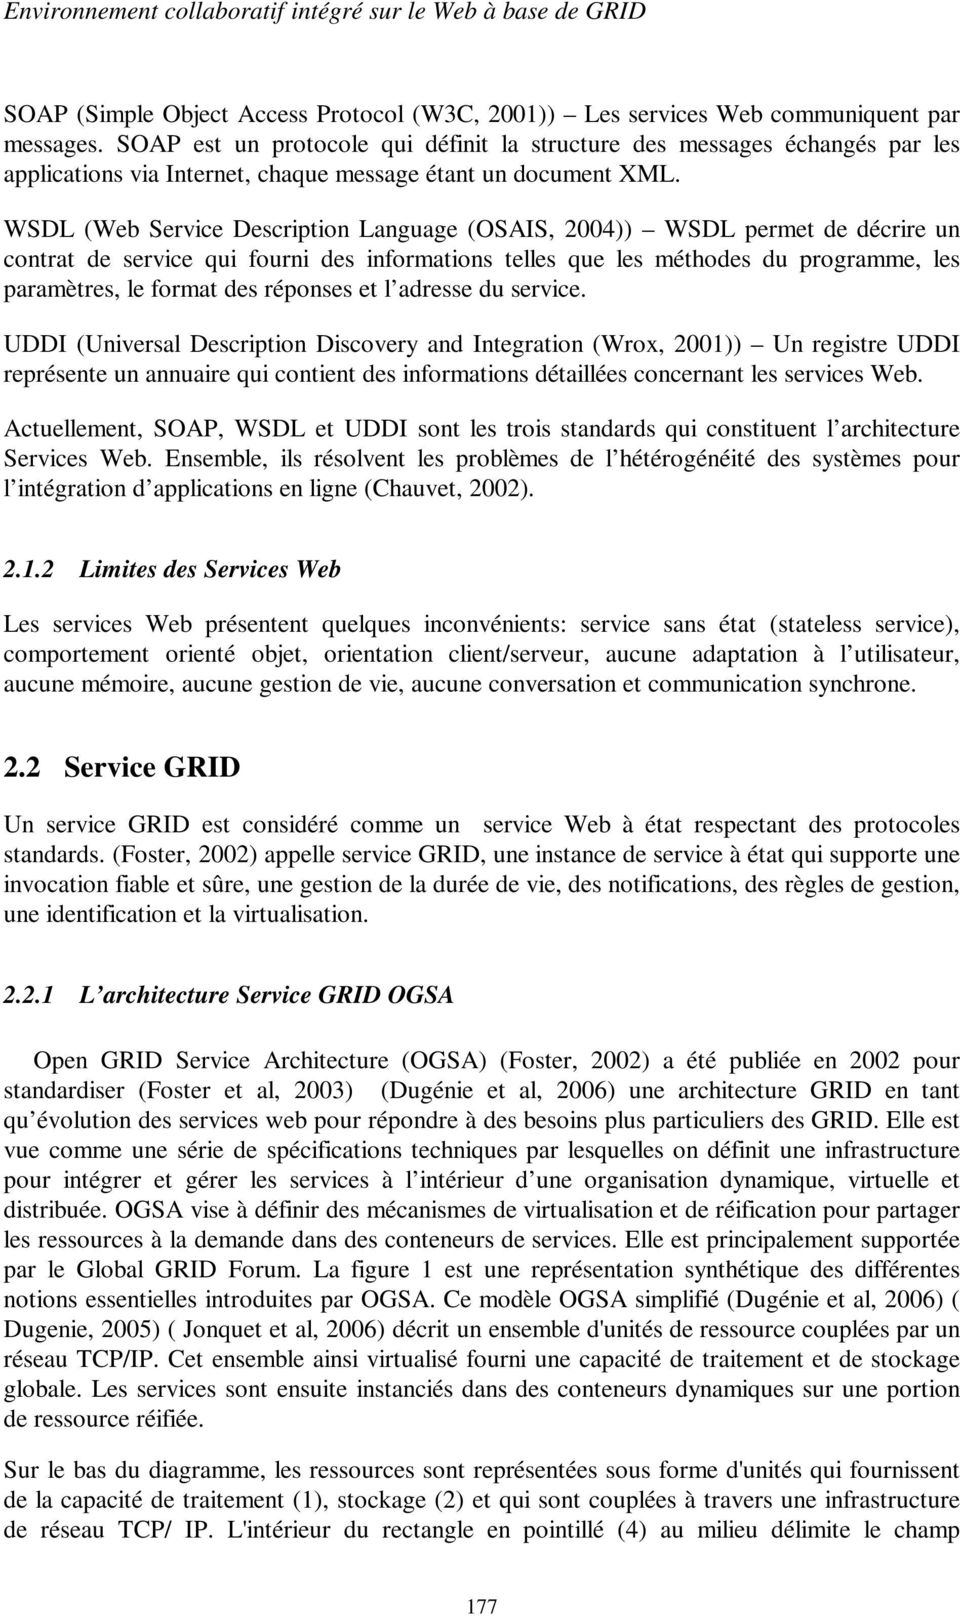 WSDL (Web Service Description Language (OSAIS, 2004)) WSDL permet de décrire un contrat de service qui fourni des informations telles que les méthodes du programme, les paramètres, le format des